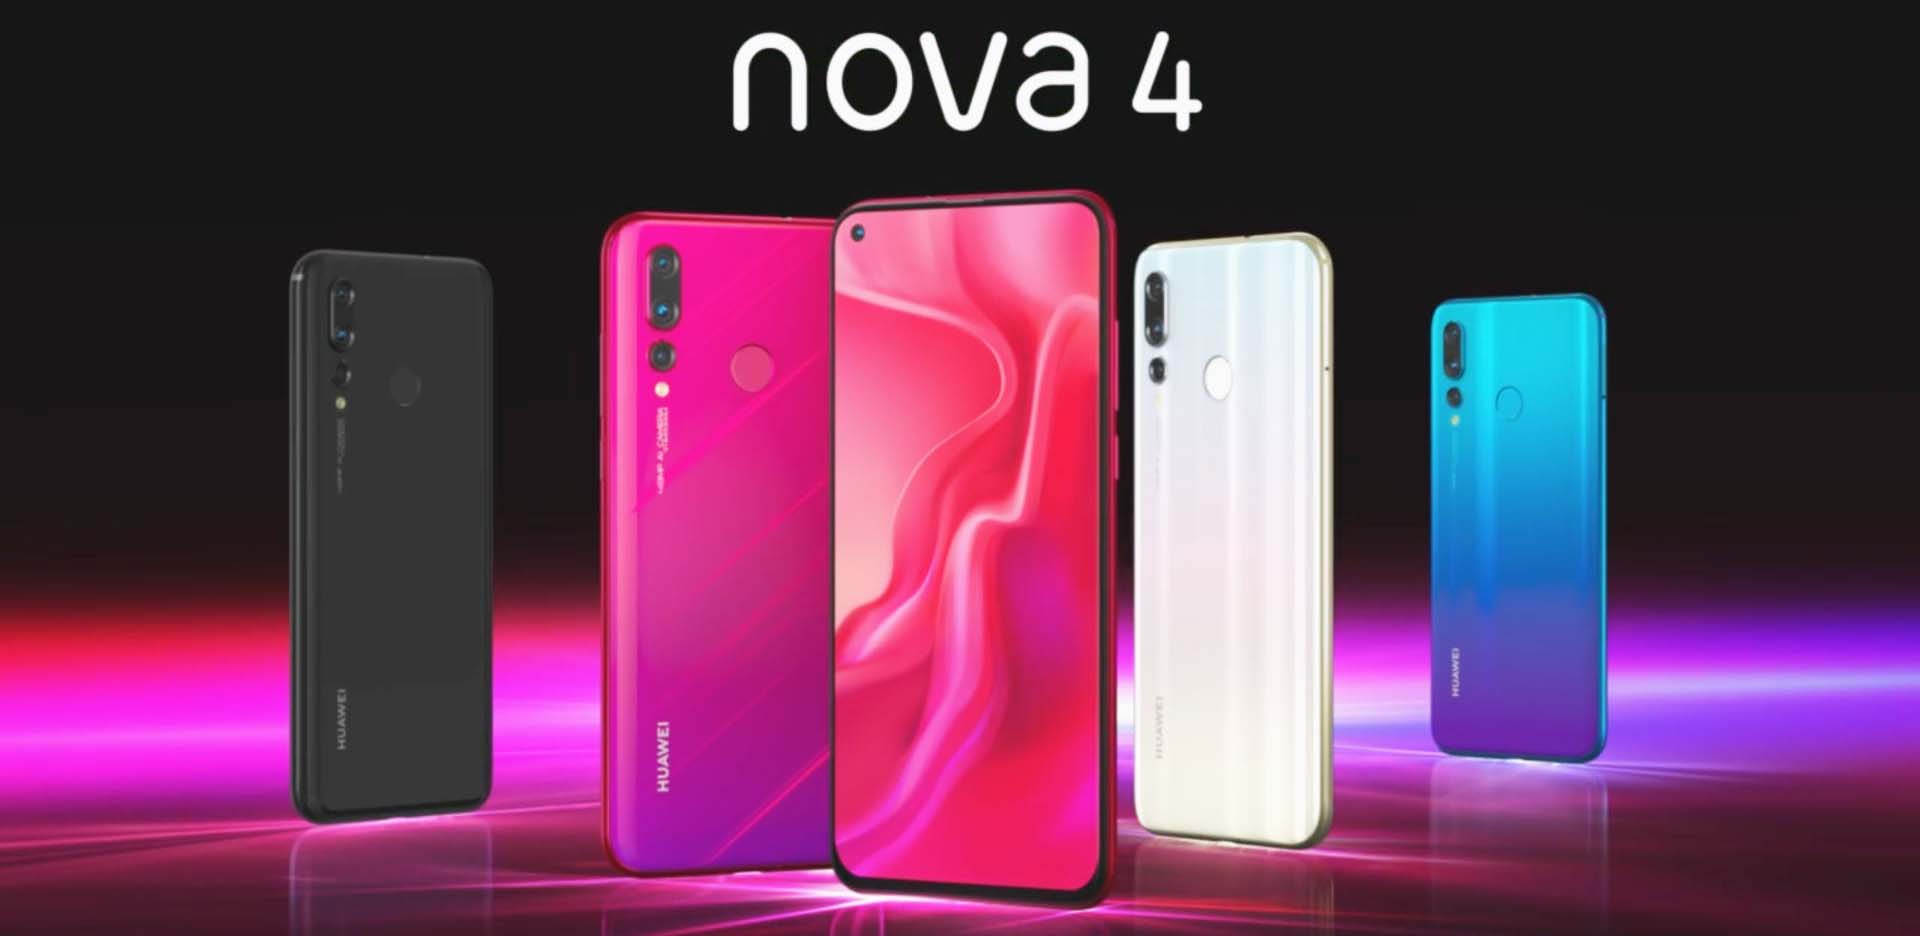 Huawei Nova 4 Price in Nepal